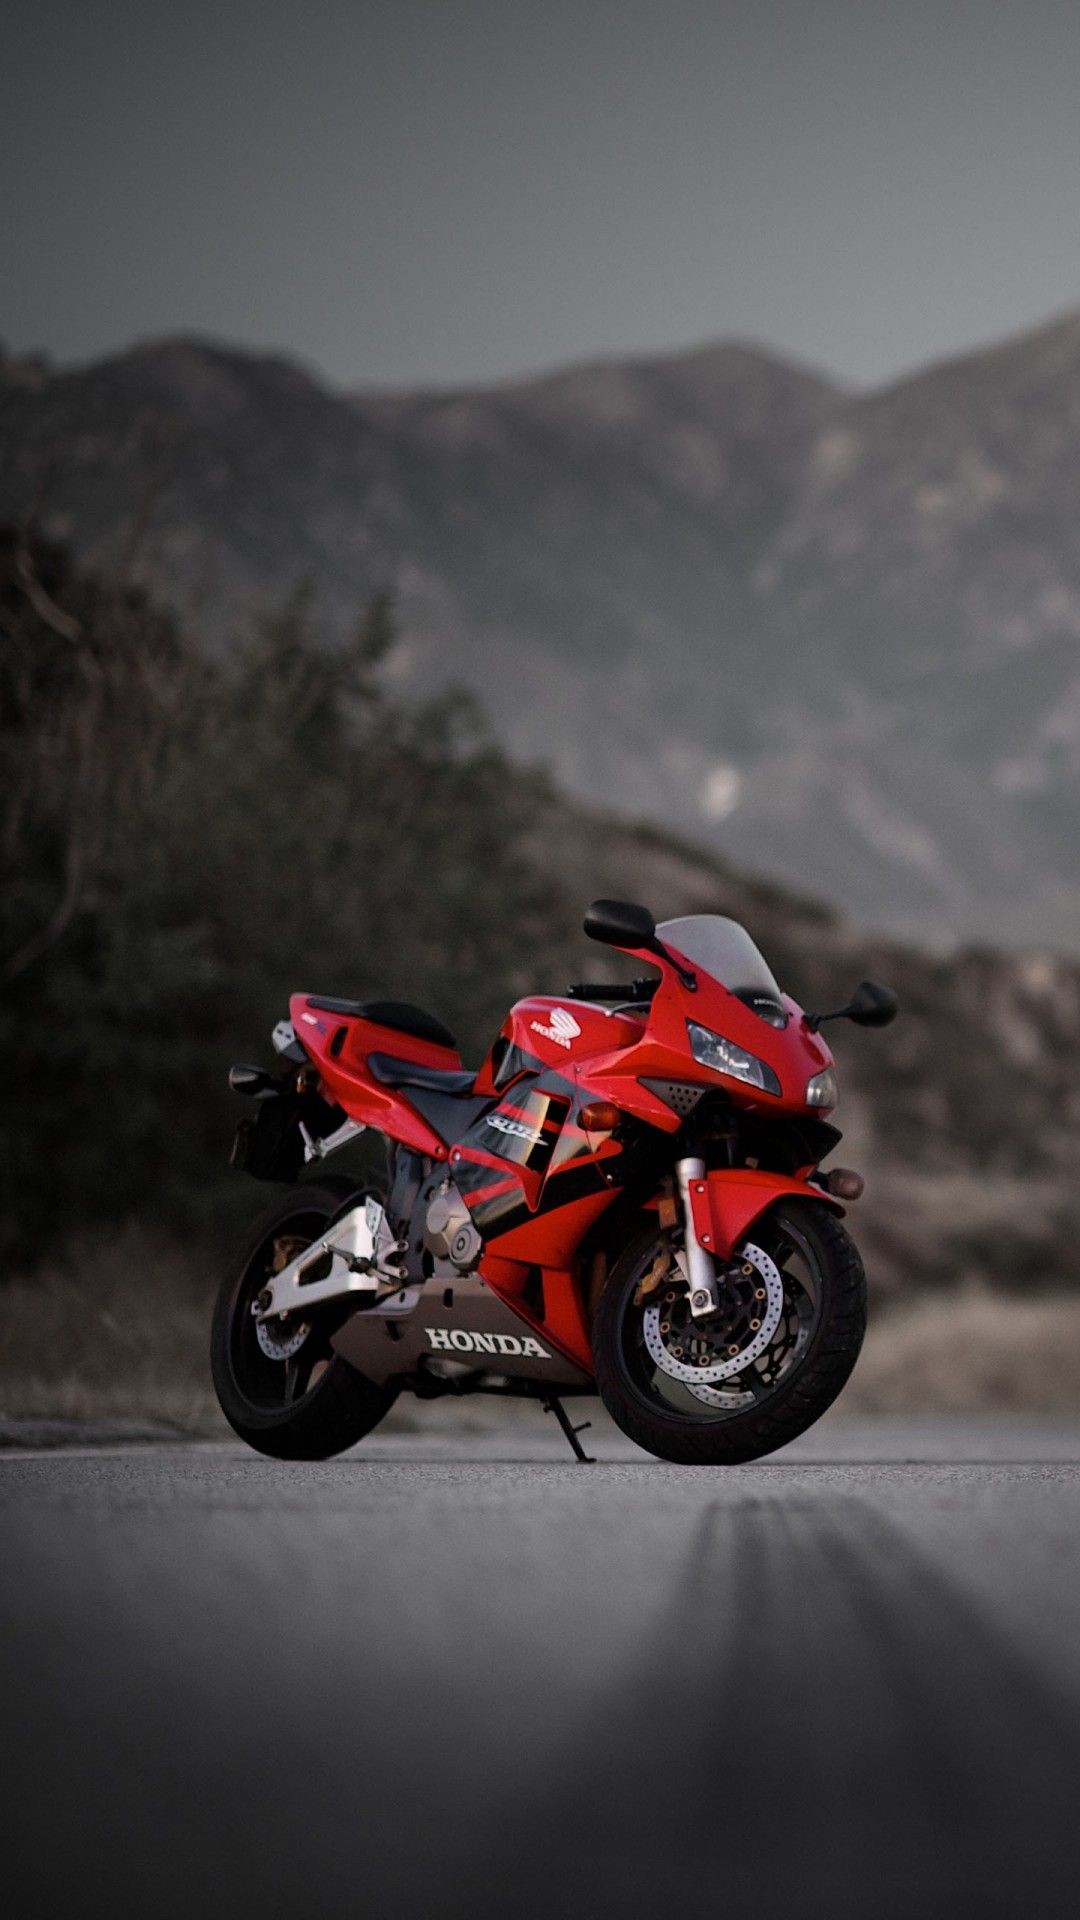 Honda CBR600RR Red Sport Motorcycle Wallpaper Free